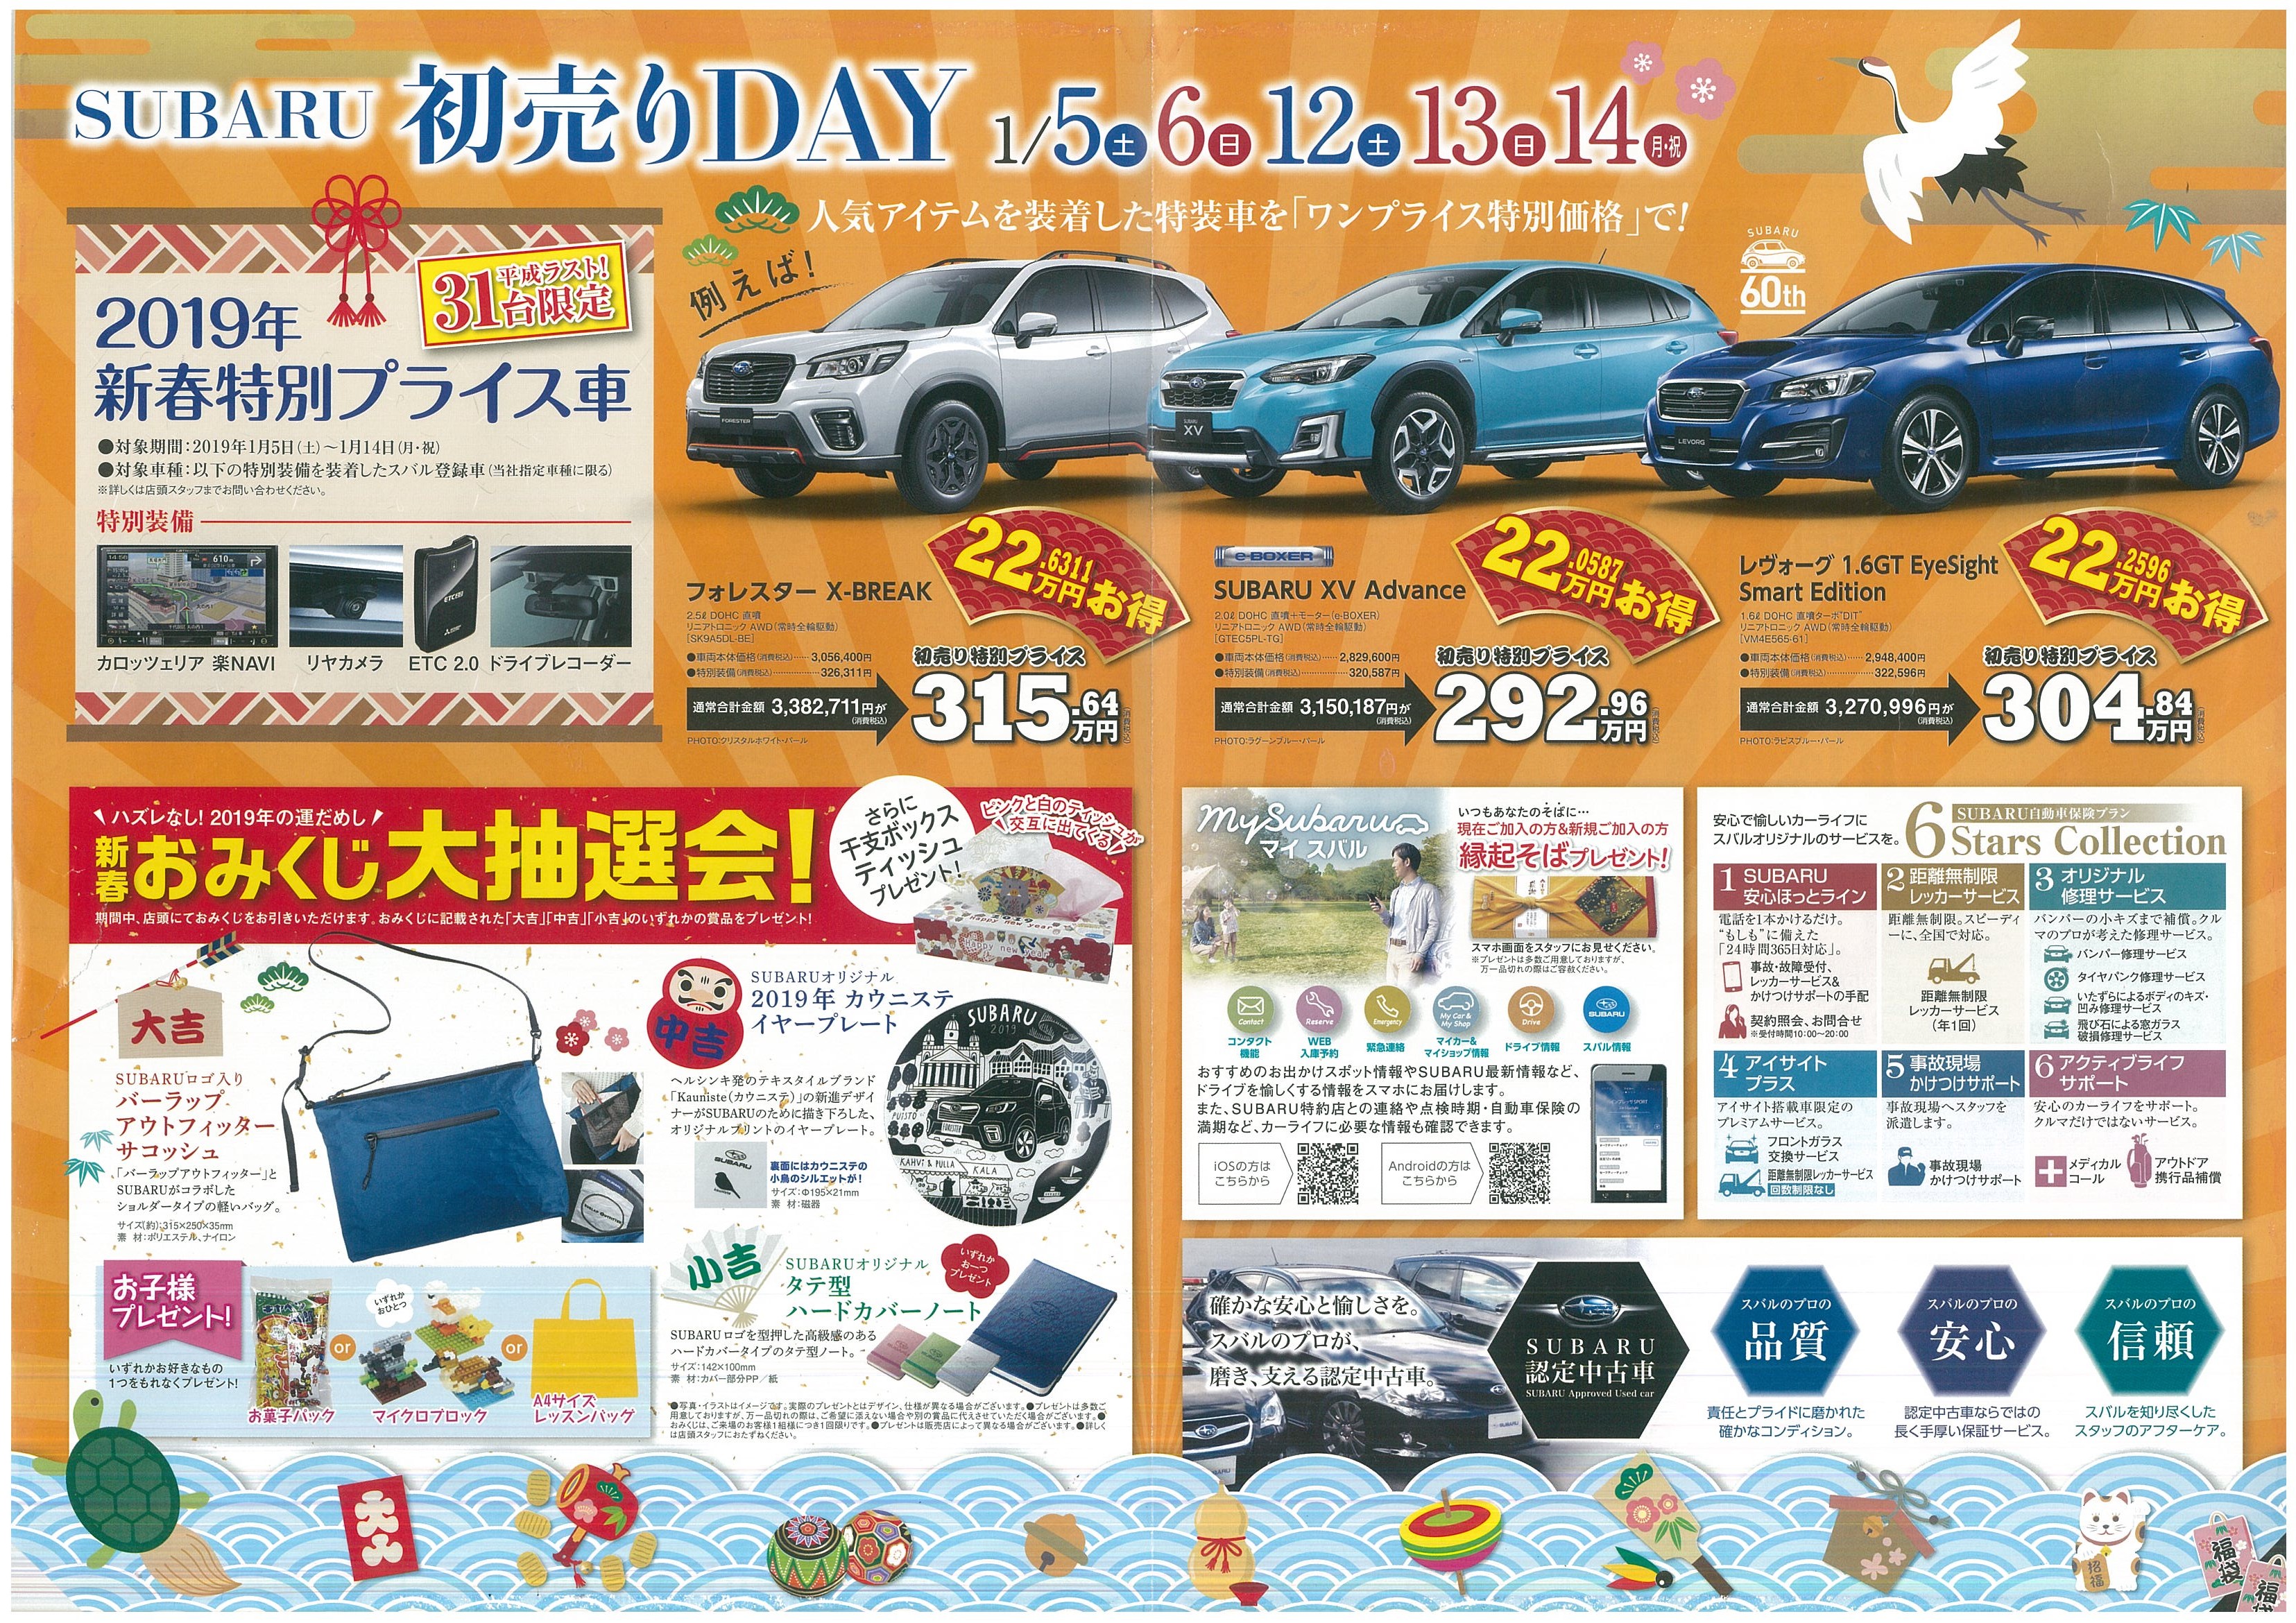 謹賀新年 Subaru初売りday開催します 岡山スバル自動車株式会社